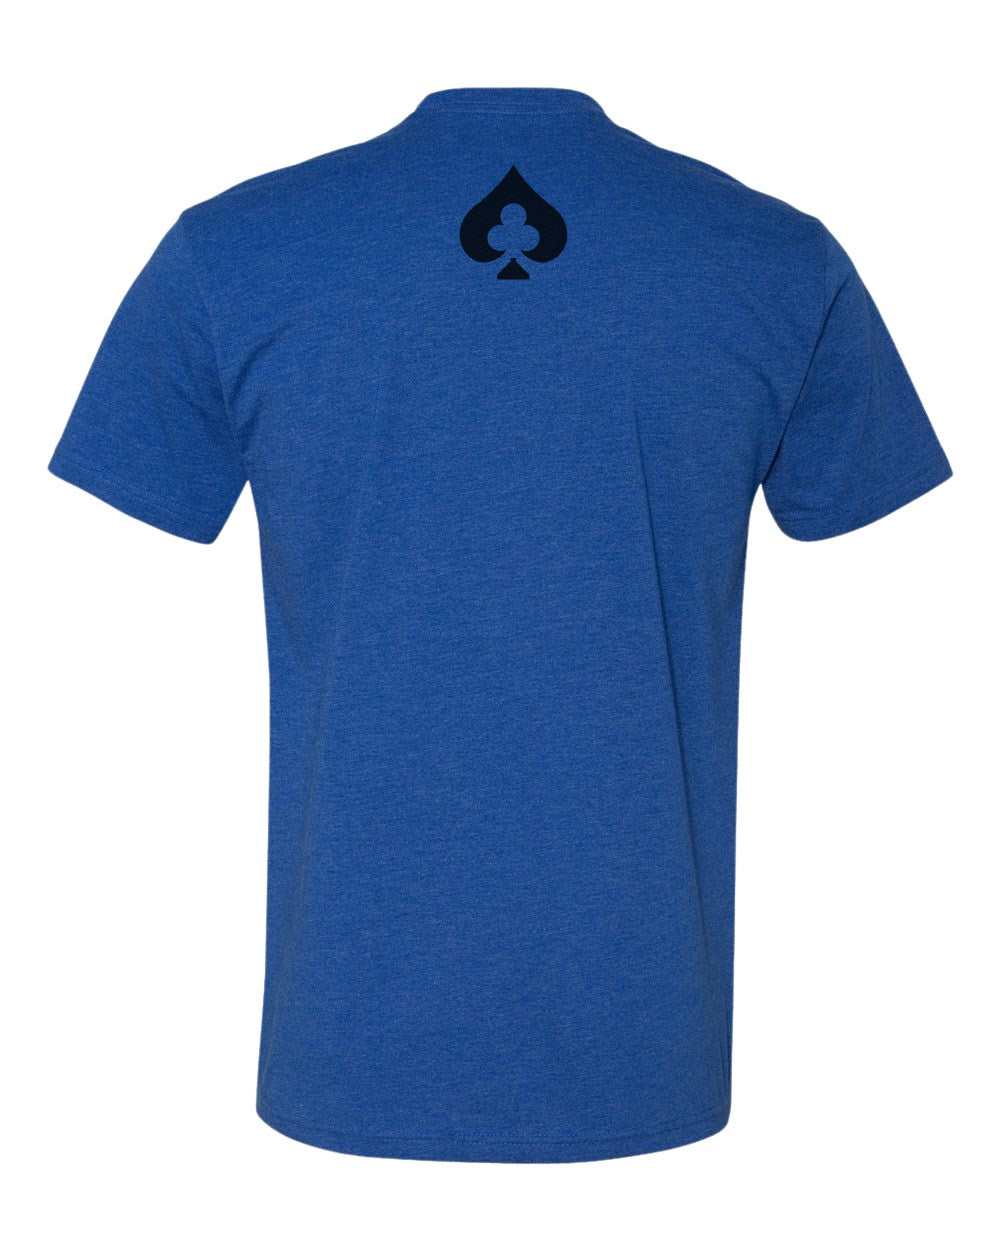 LCC Text Shirt - Royal Blue